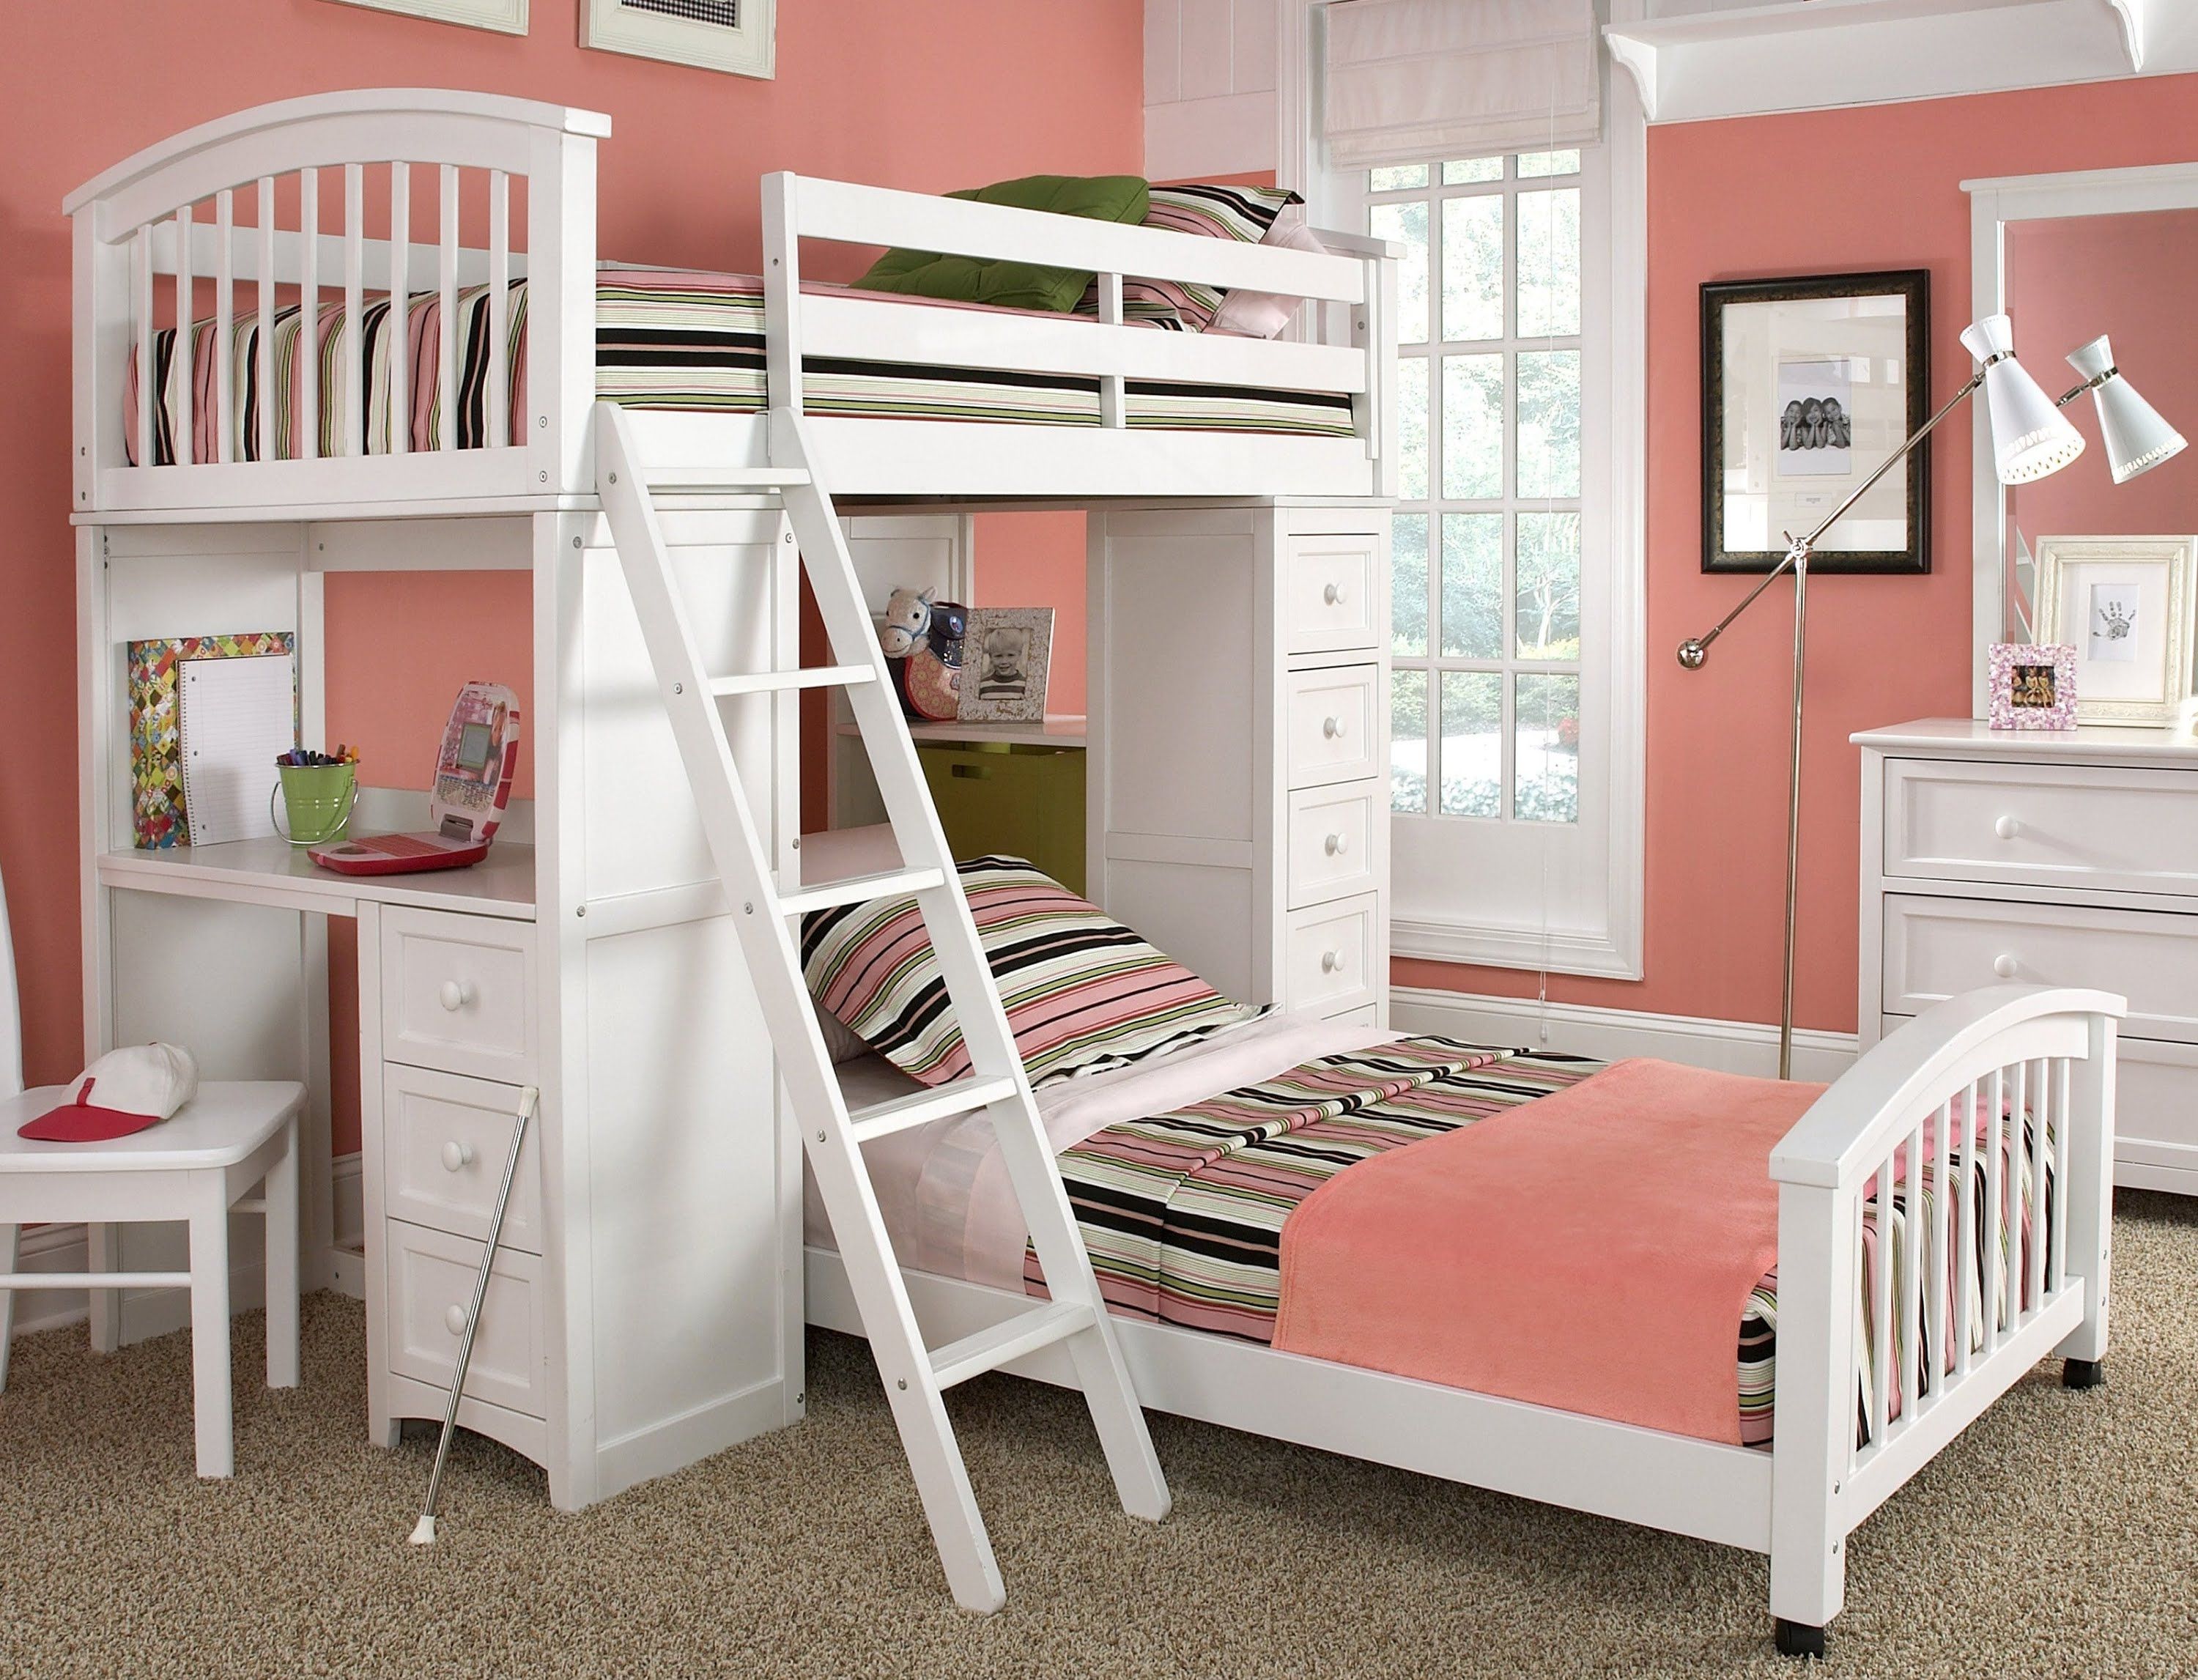 Как правильно выбрать двухъярусную кровать в детскую комнату?